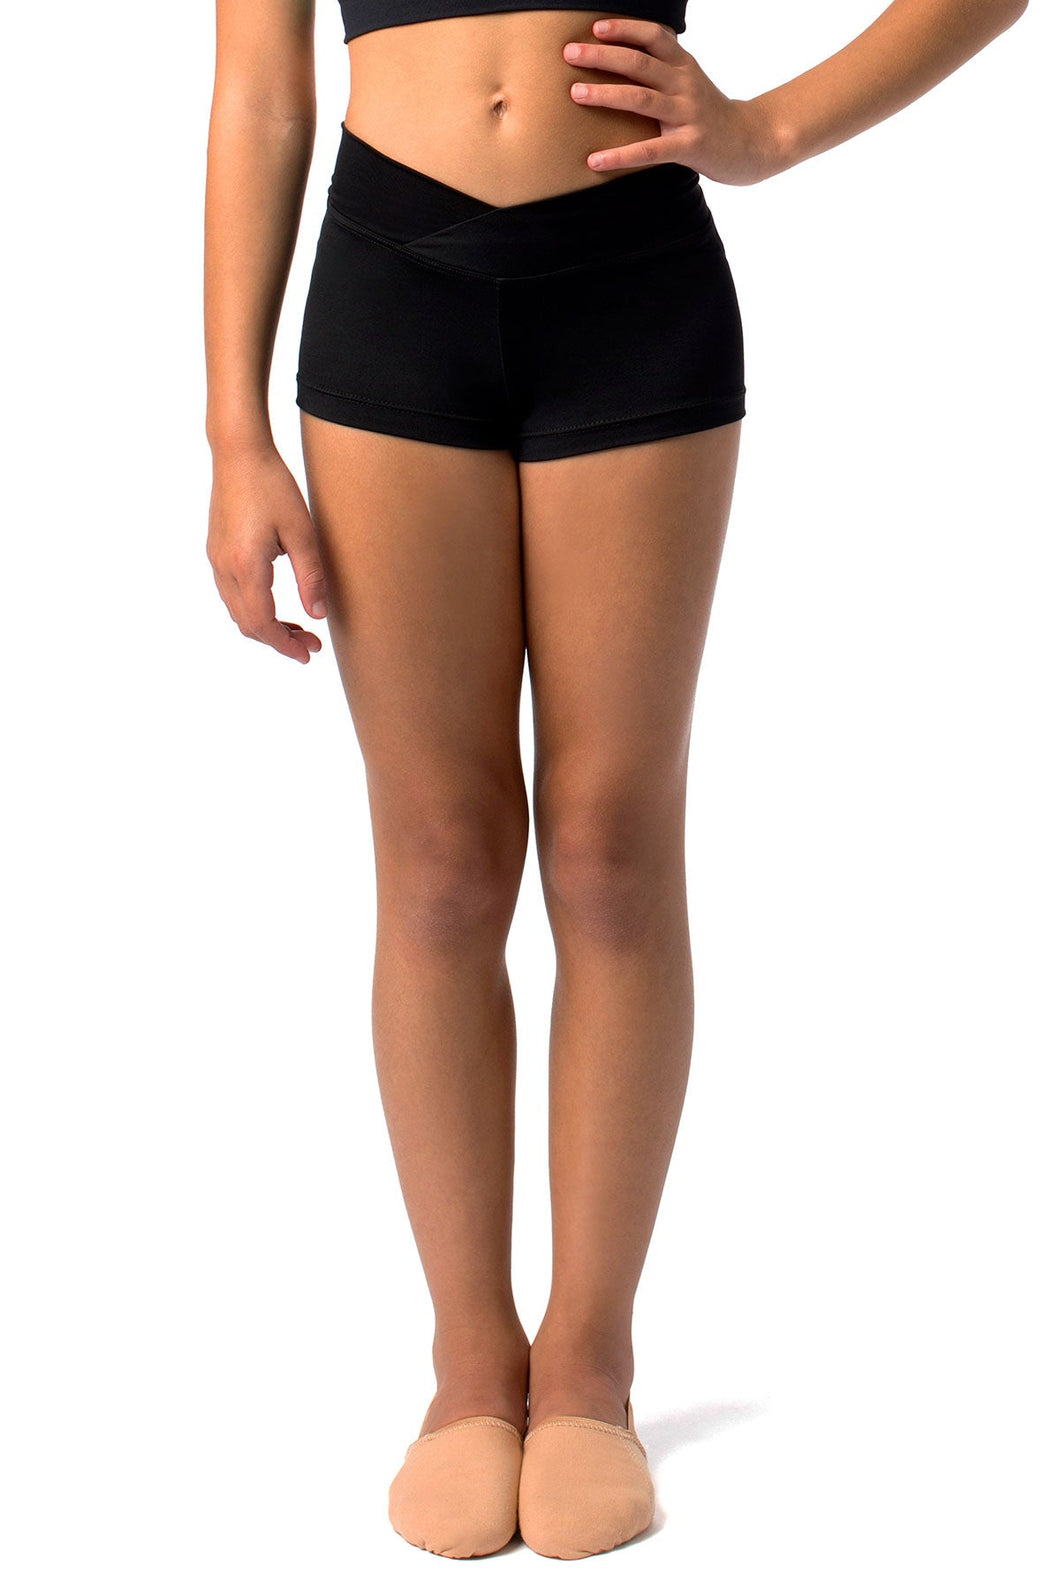 Bree - Child Shorts - SL81